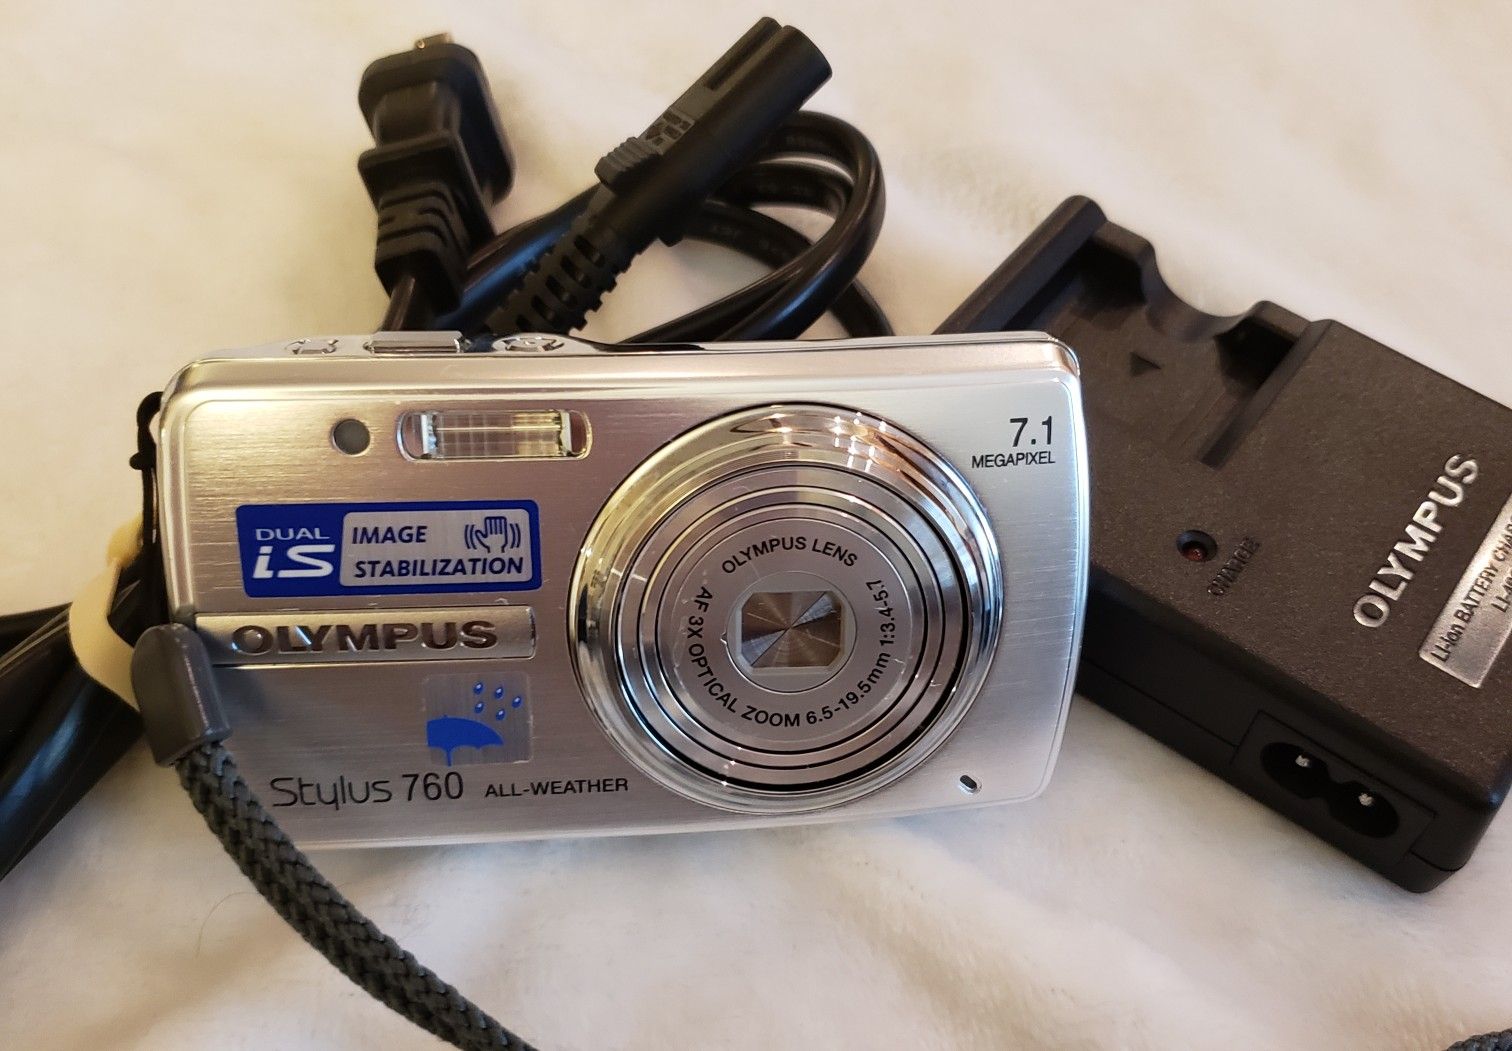 Olympus Stylus 760 All Weather Digital Camera 7.1MP